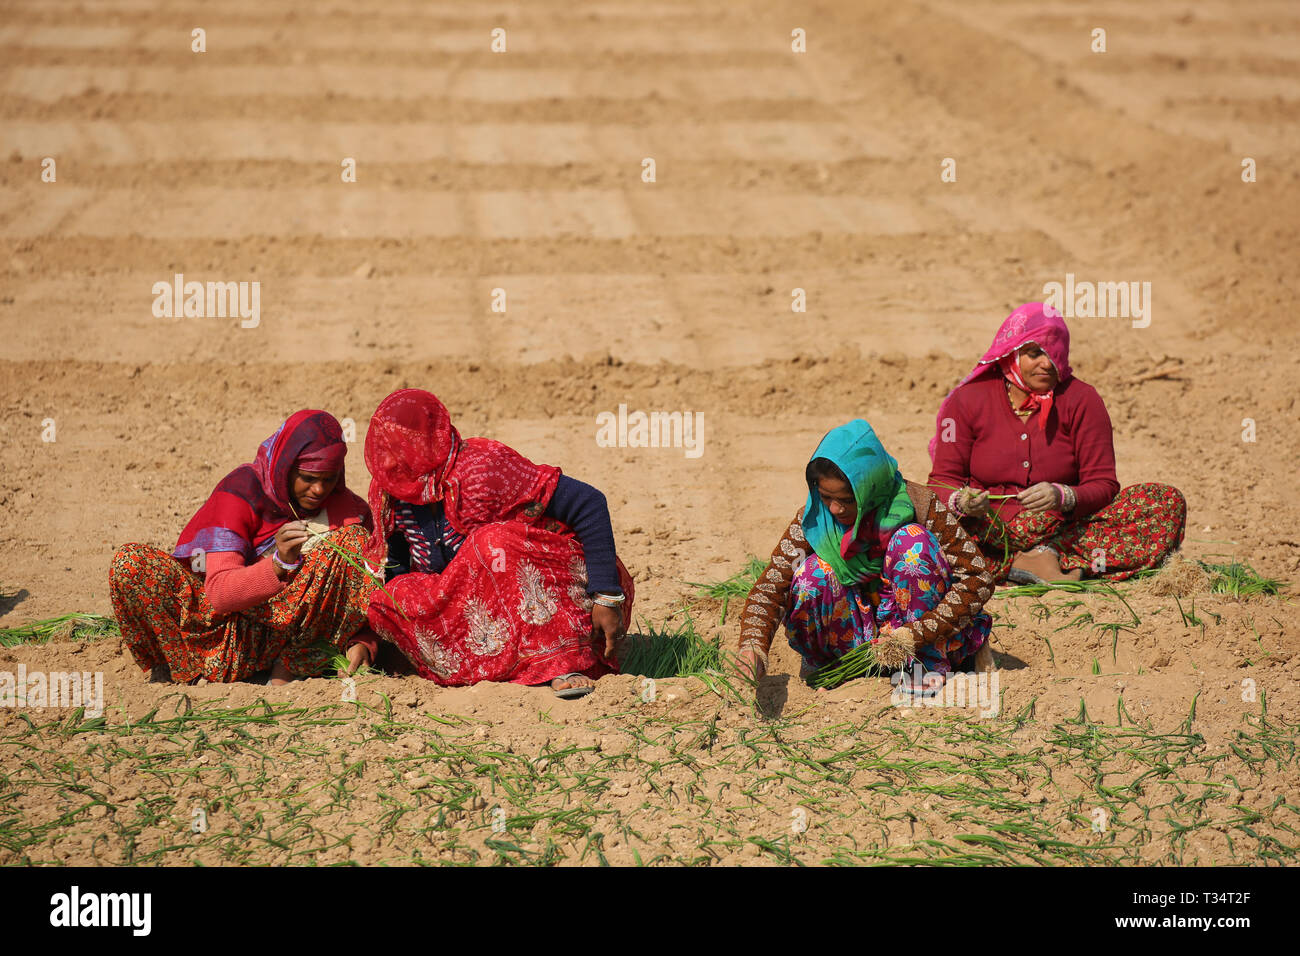 Les agriculteurs indiens travaillant dans le domaine de paysage - Rajasthan - Inde l'Agriculture Banque D'Images